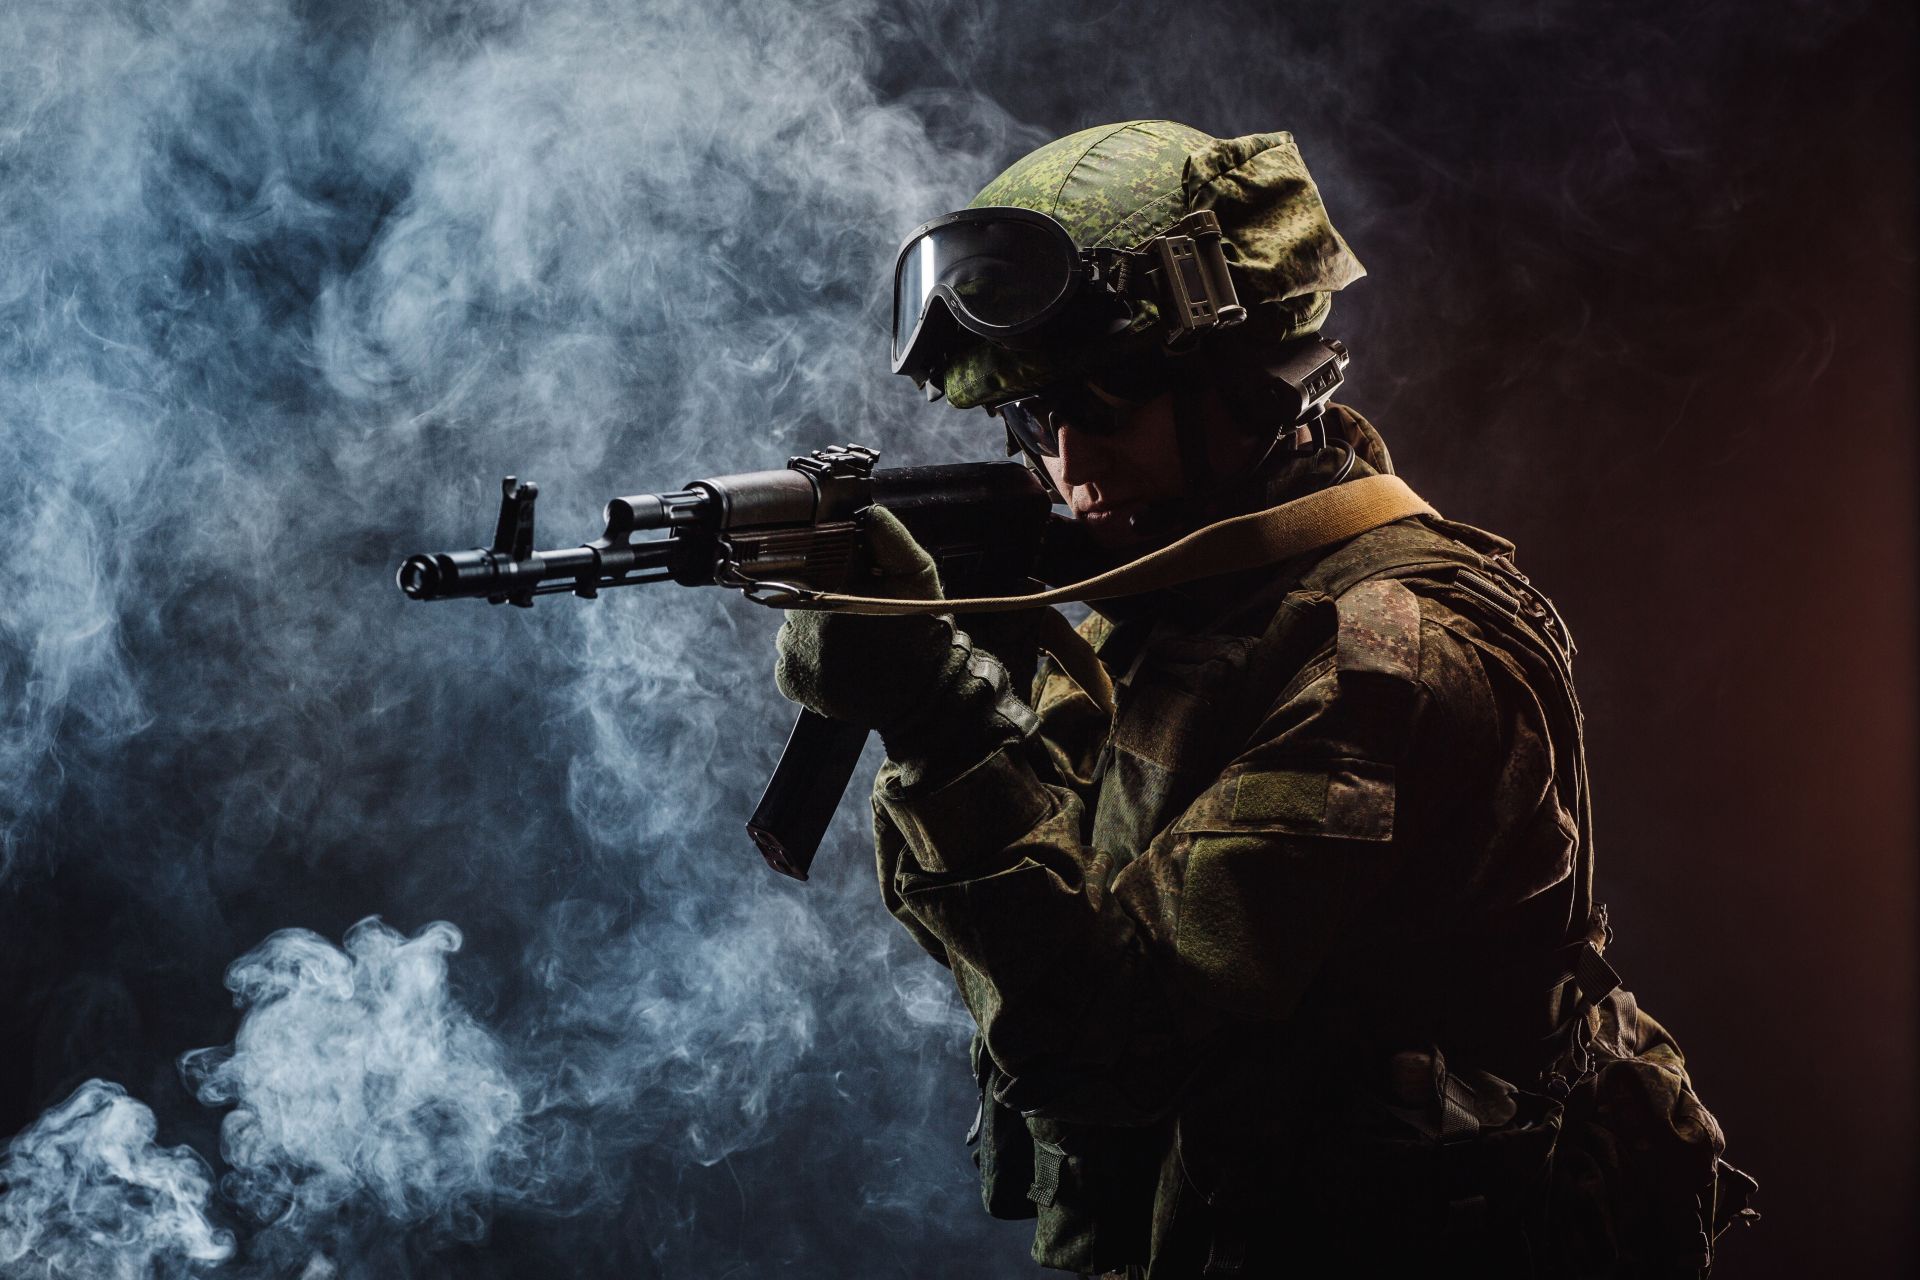 AK-47 е един от главните участници в почти всеки военен конфликт по света